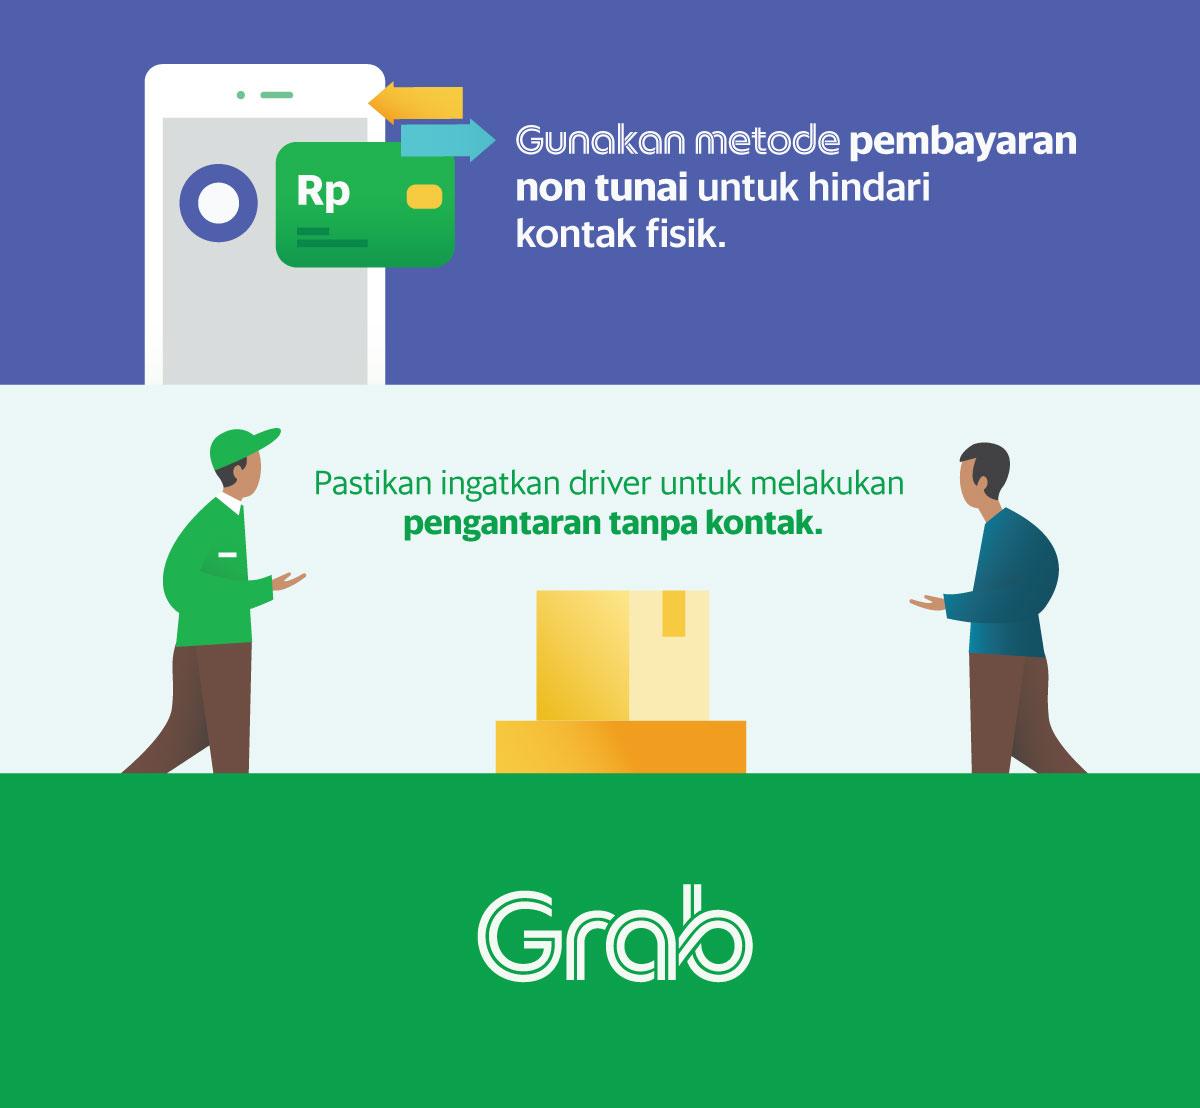 Walau PSBB membatasi, Grab akan terus melayani dengan cara paling aman |  Grab ID